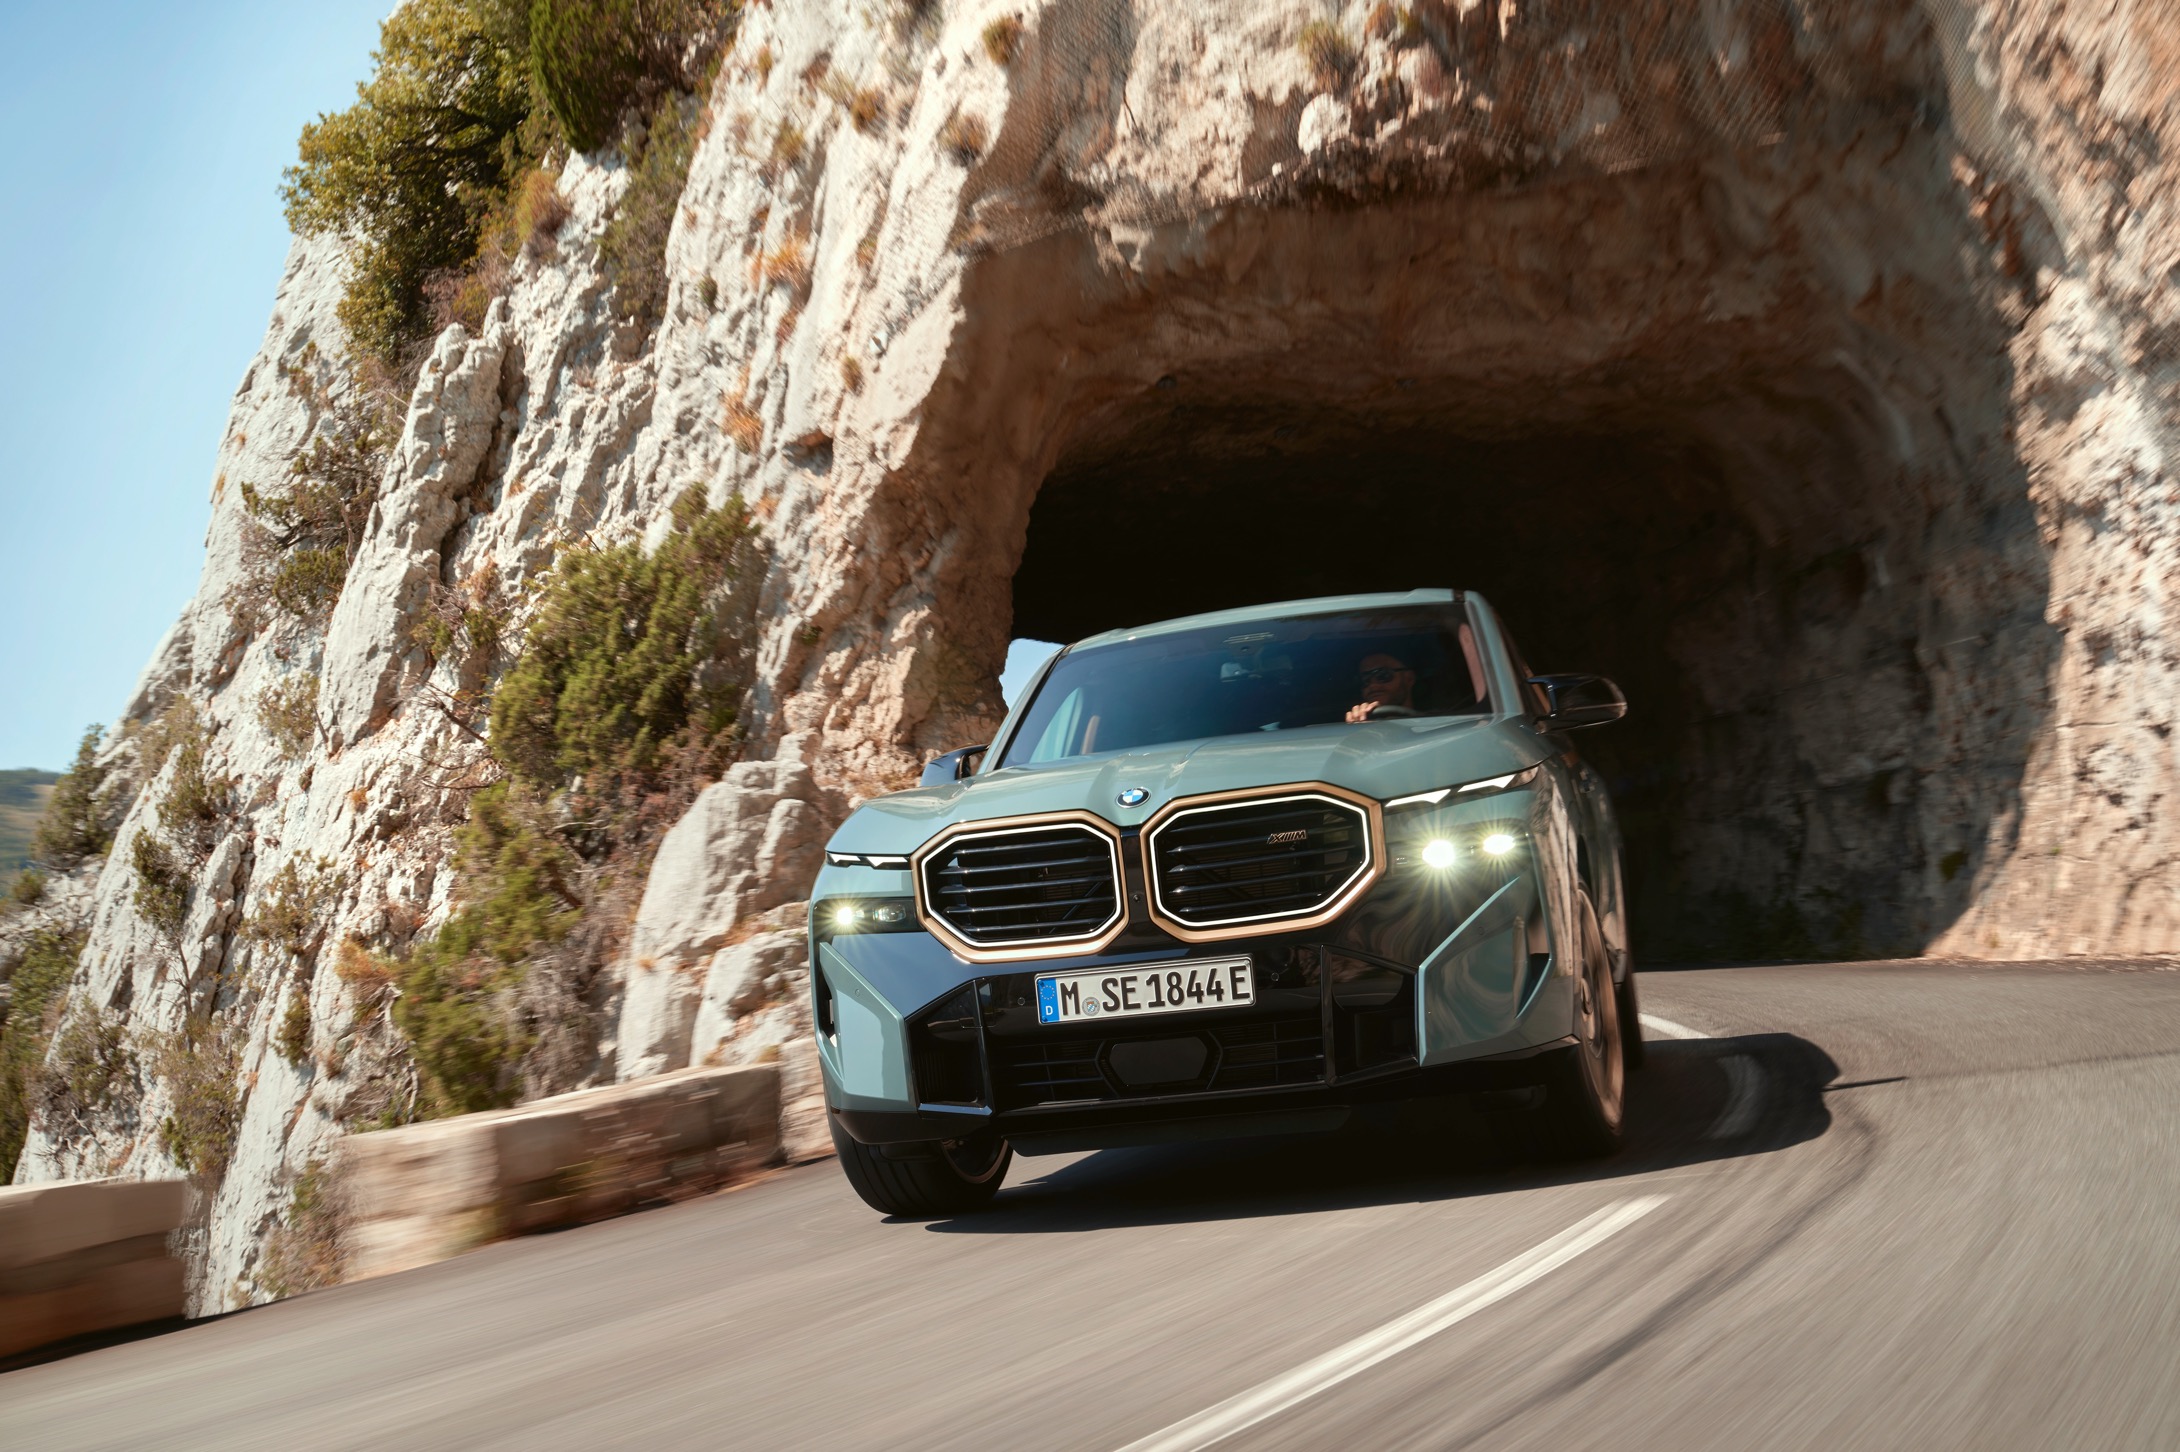 BMW M nos trae su primer vehículo de alto desempeño con sistema de propulsión electrificado